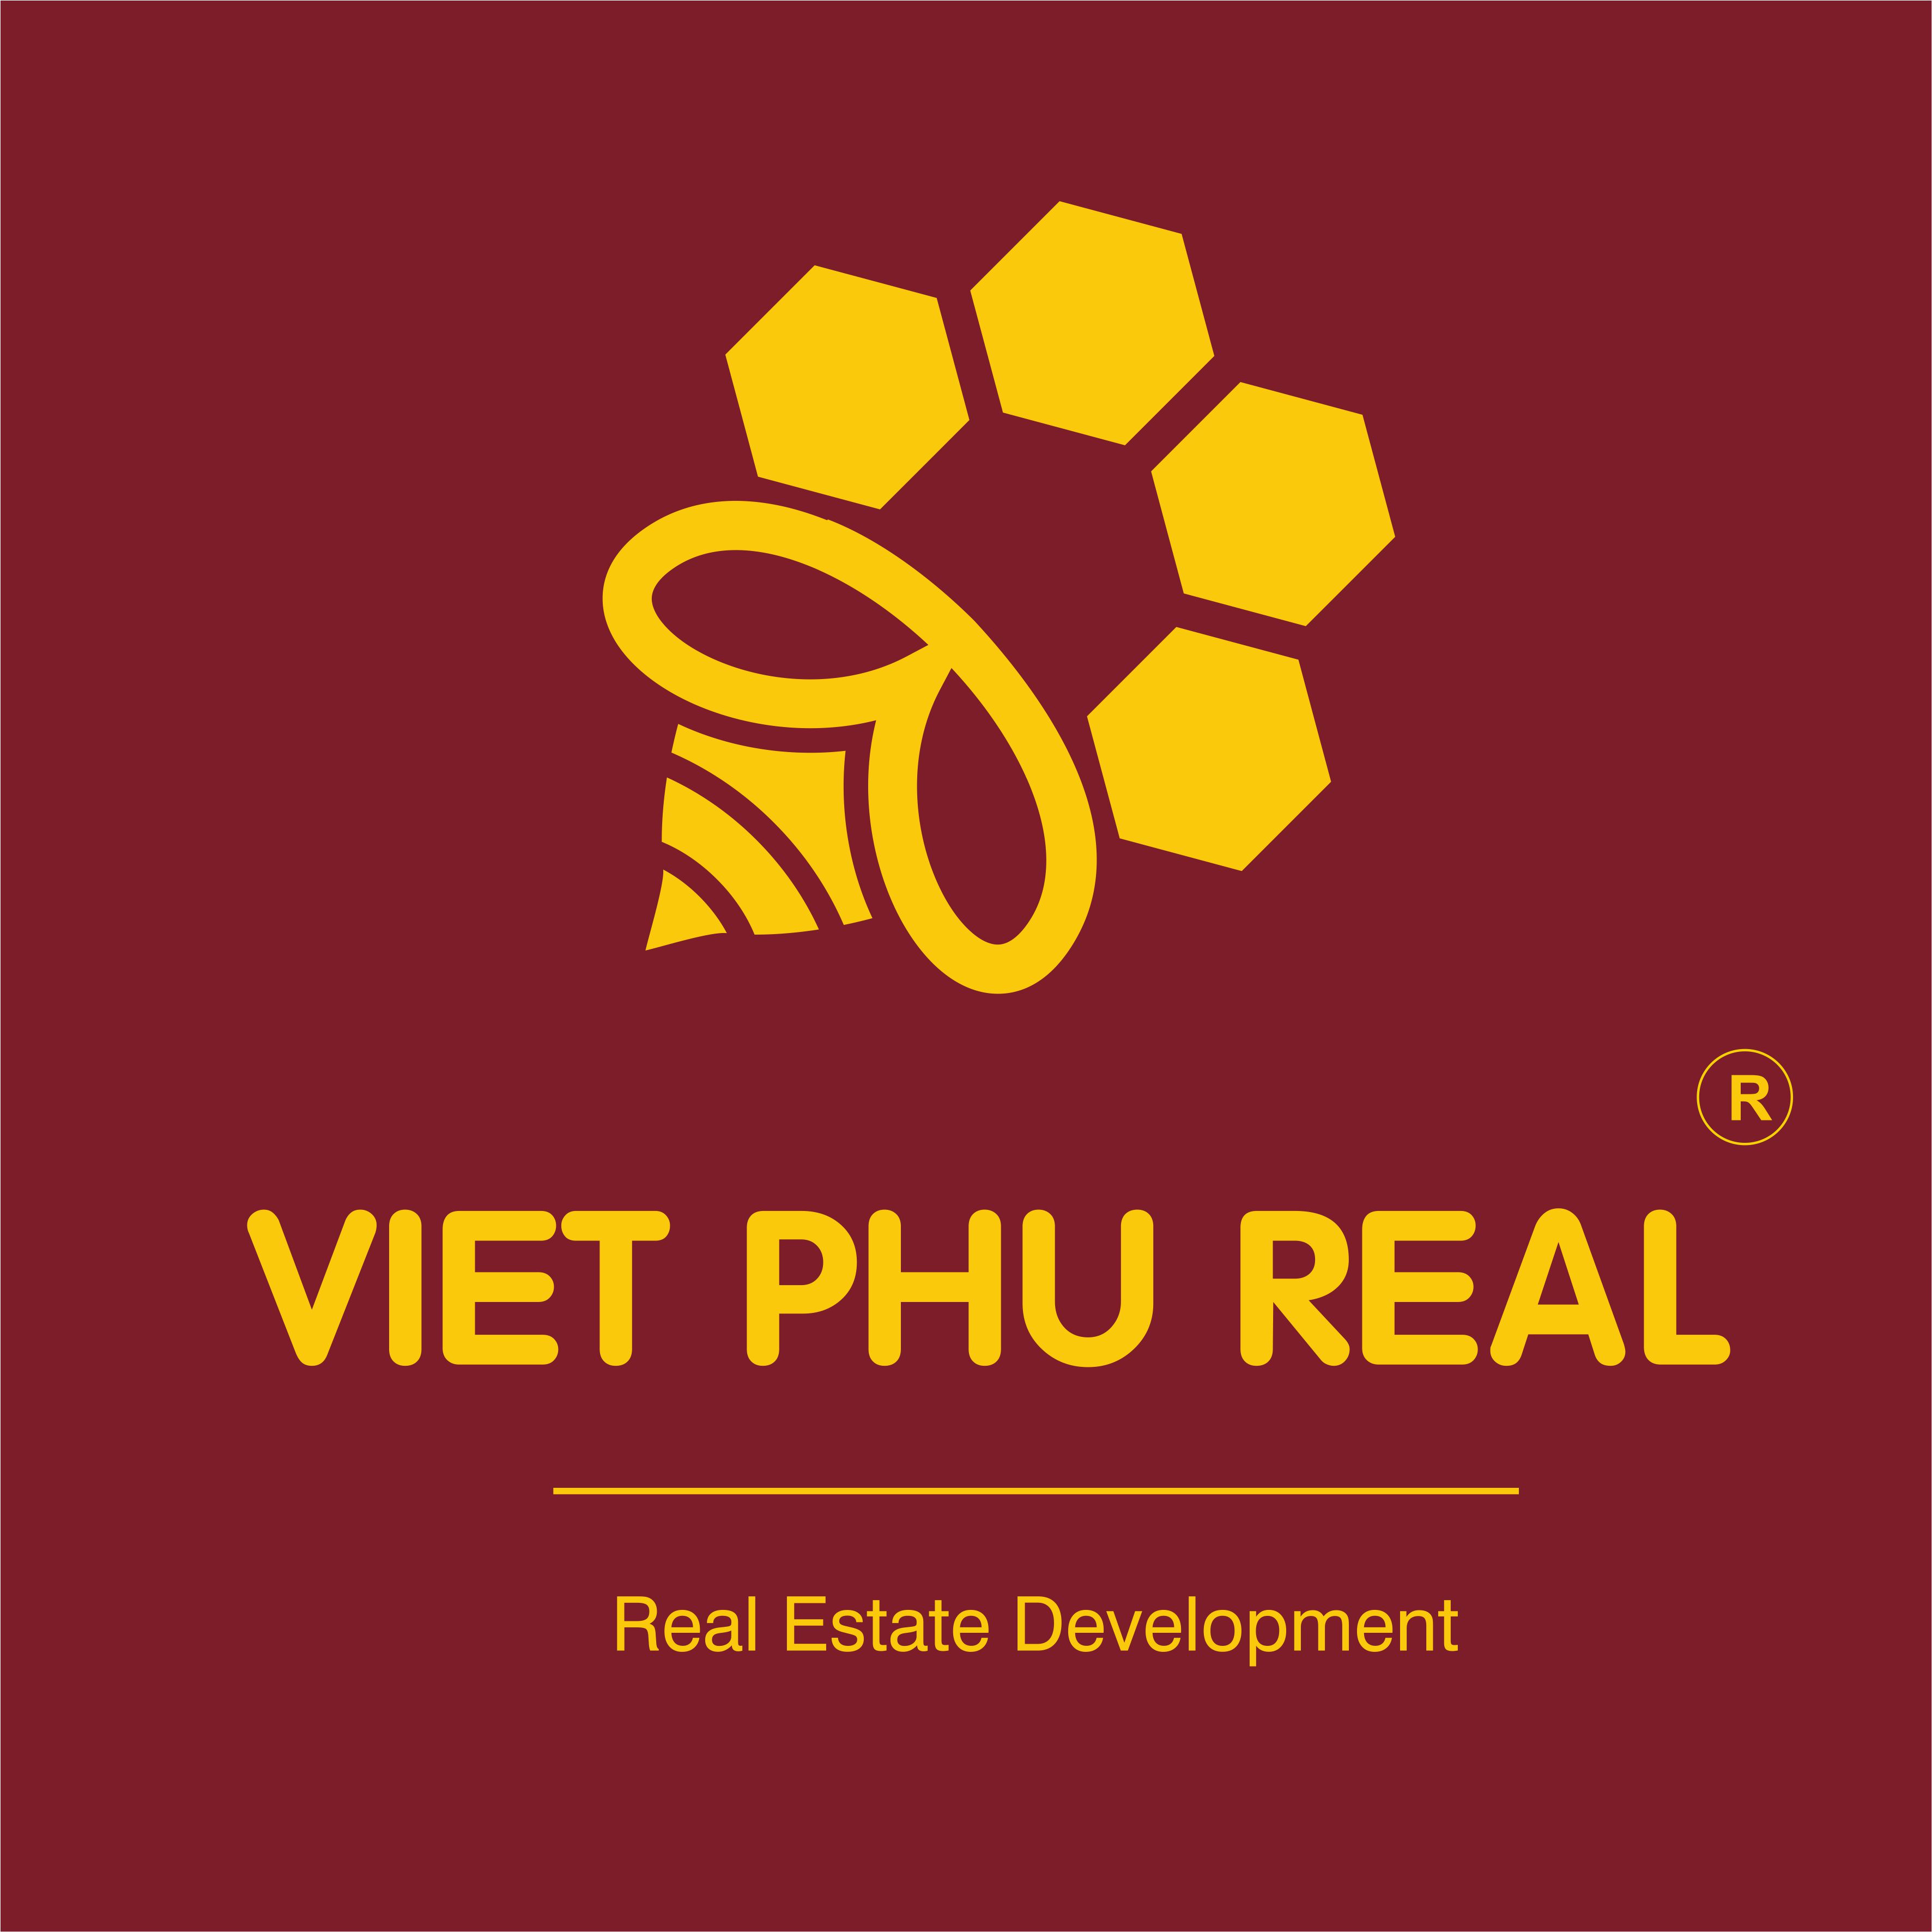 Việt Phú Real - Mua Bán Nhà Đất Bđs Nhơn Trạch, Thành Phố Thủ Đức, Bà Rịa Vũng Tàu